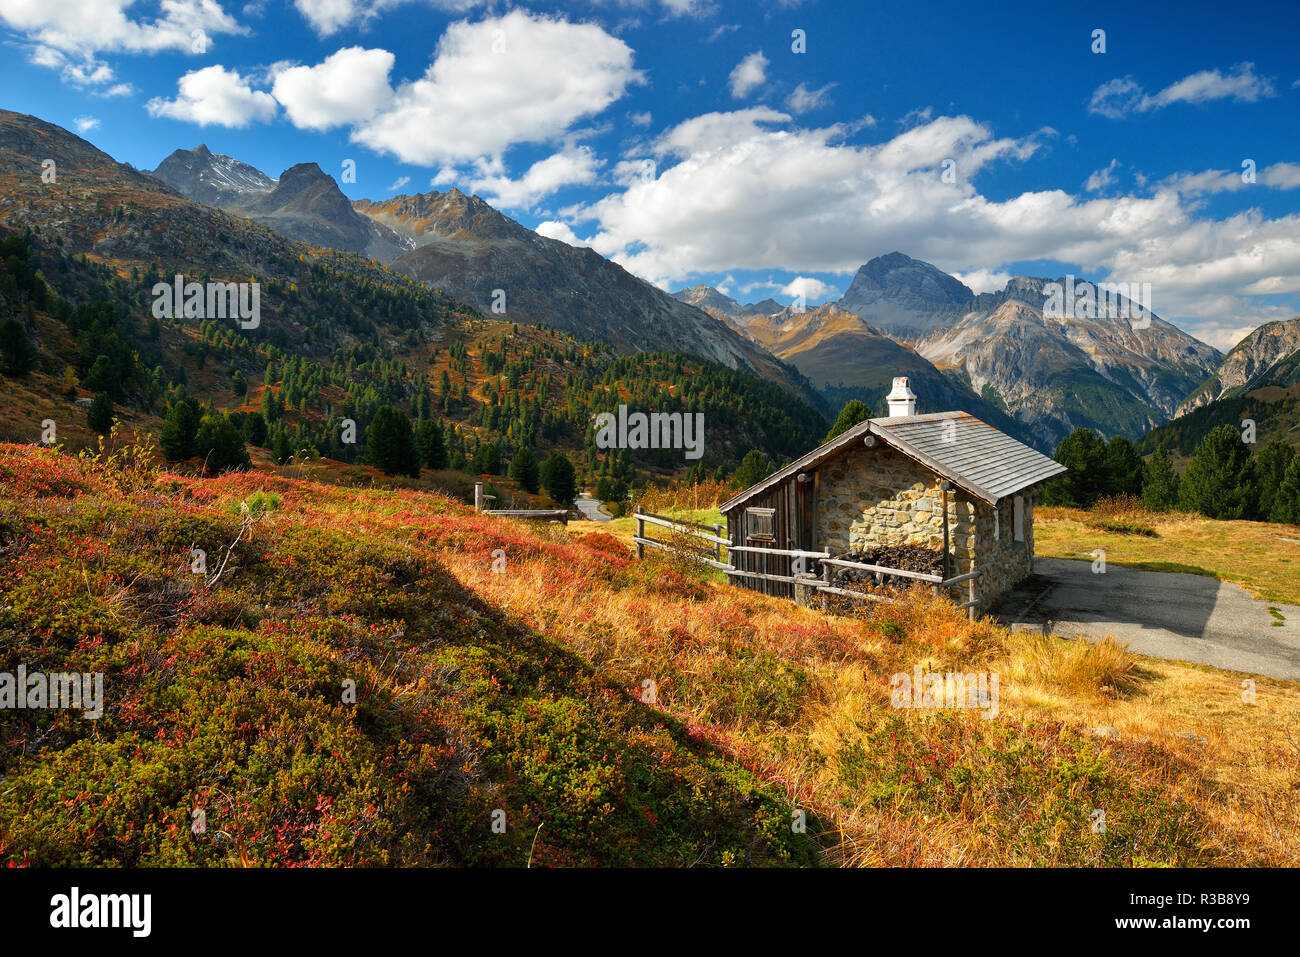 Paysage de montagne avec cabane de montagne en automne, Albulatal, Val d'Alvra, Canton des Grisons, Suisse Banque D'Images